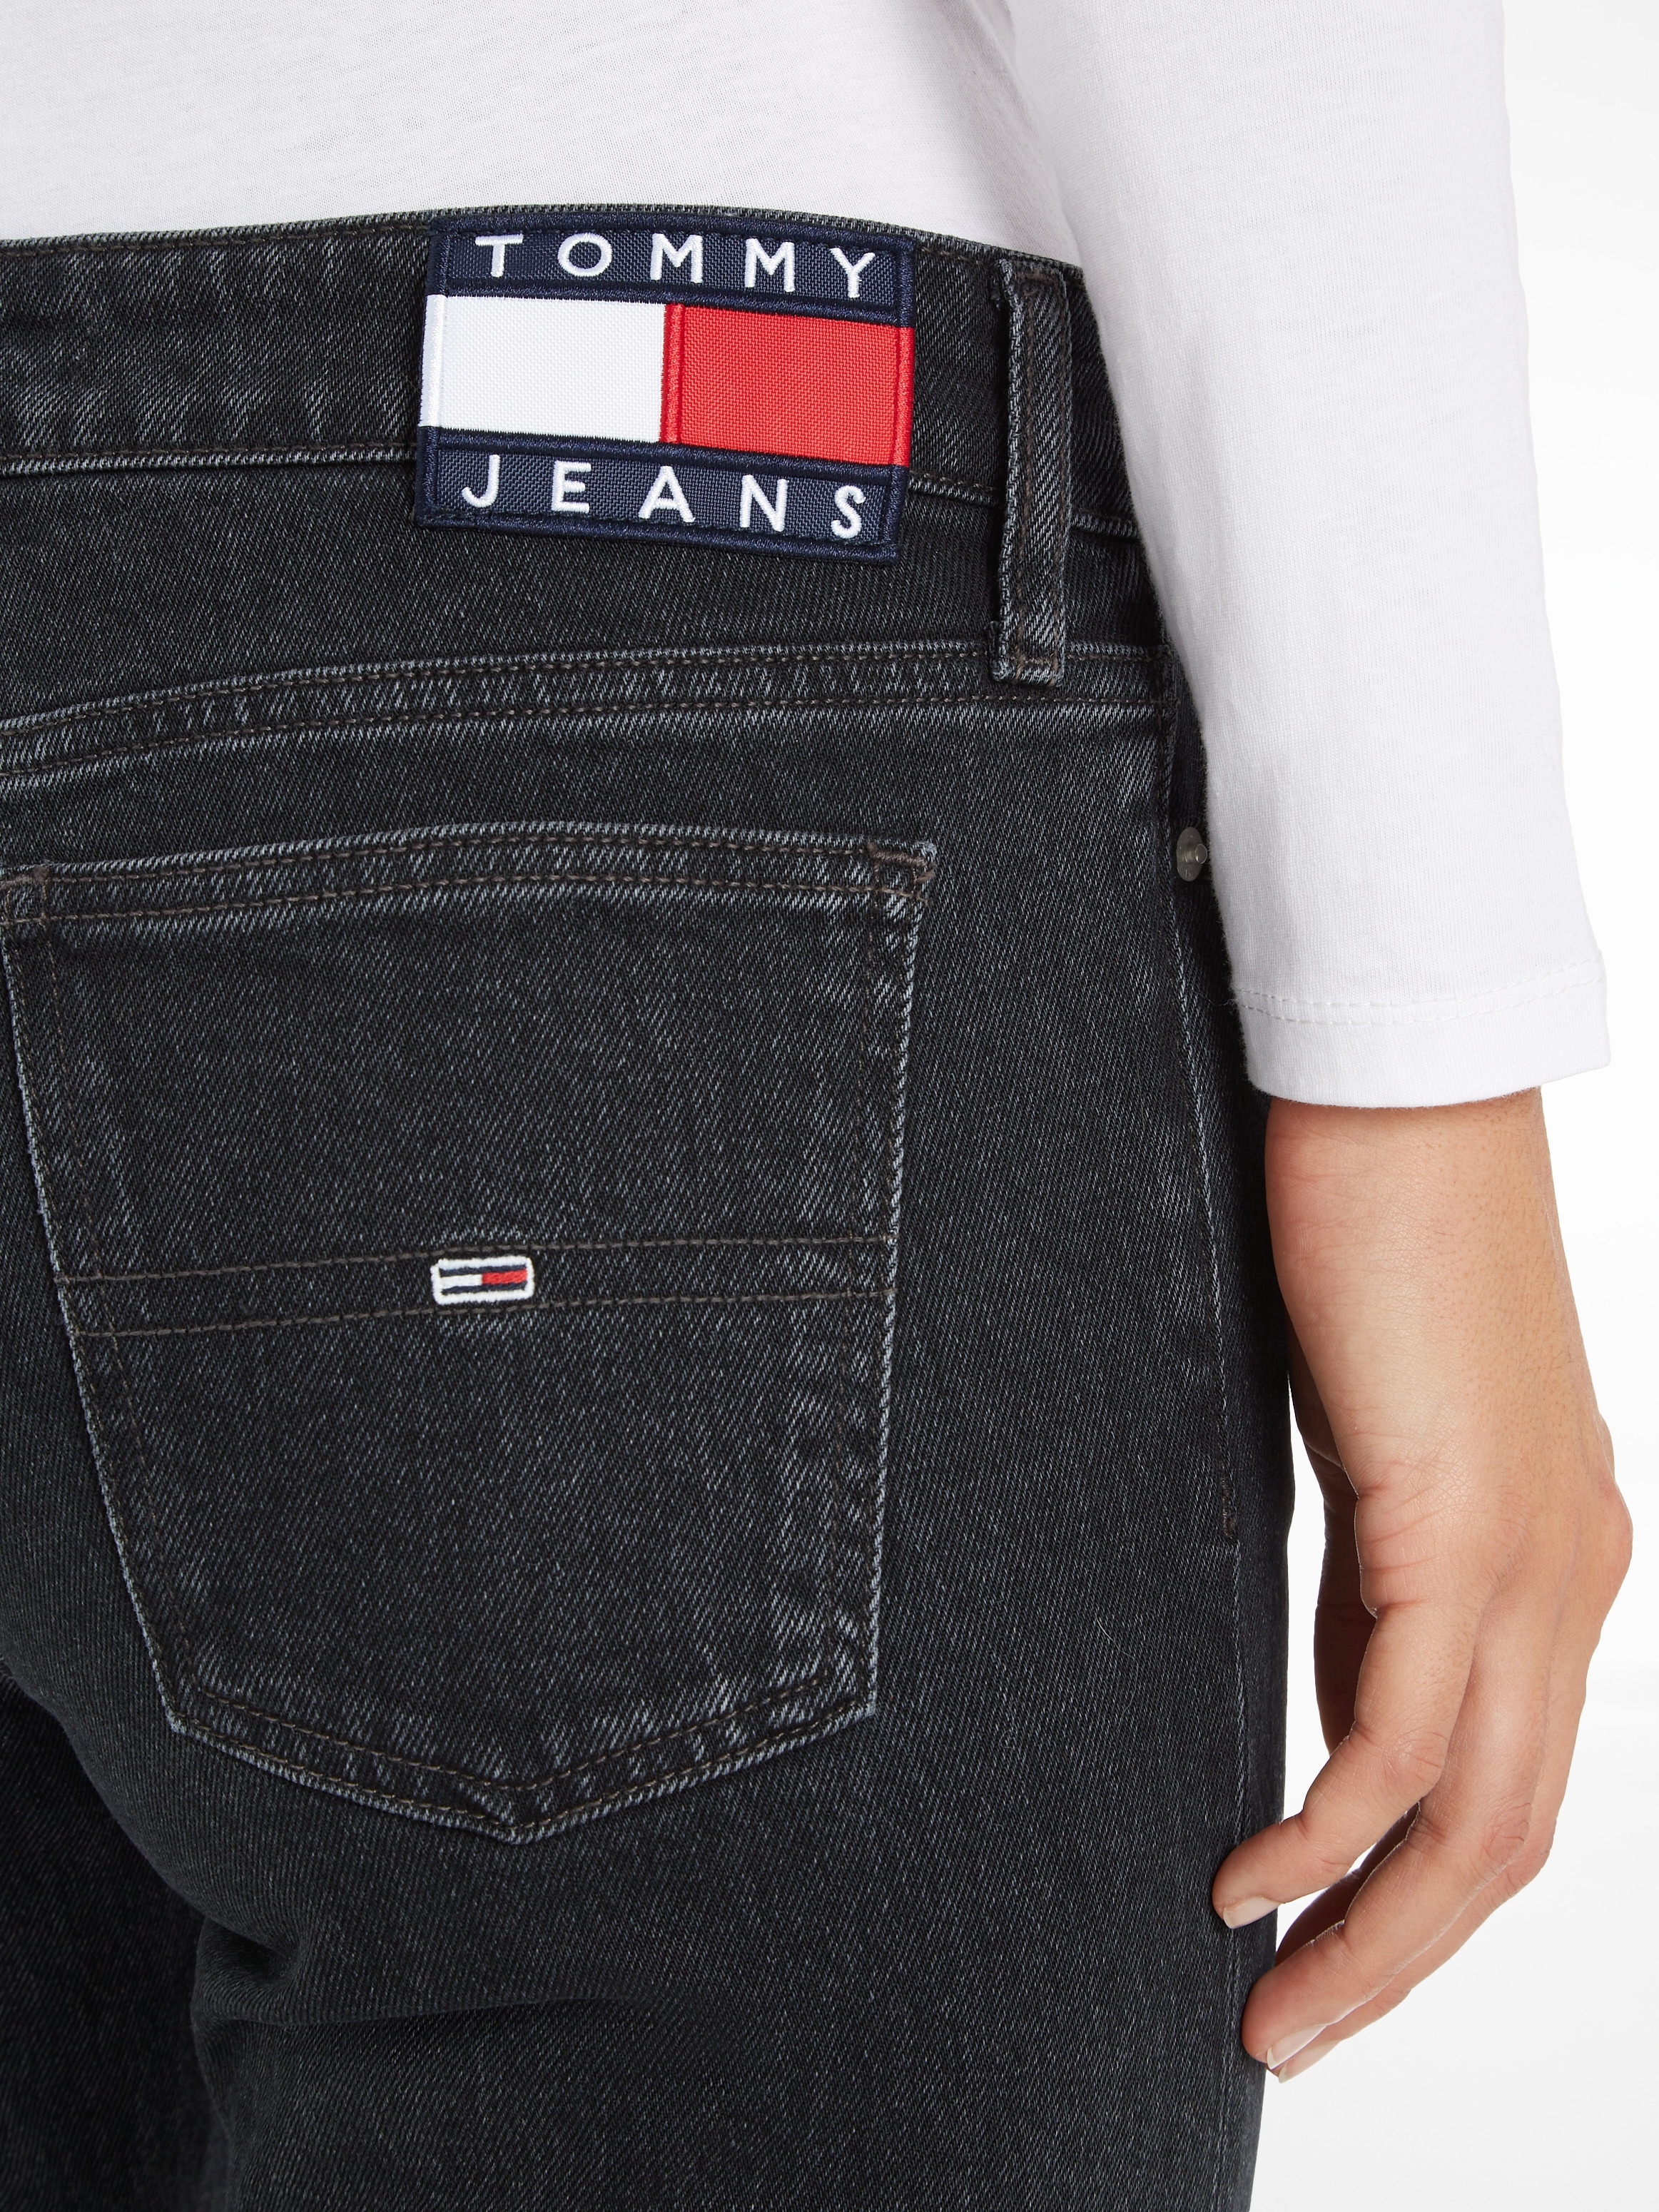 Tommy Jeans Schlagjeans, mit Tommy Jeans Logobadge für kaufen | BAUR